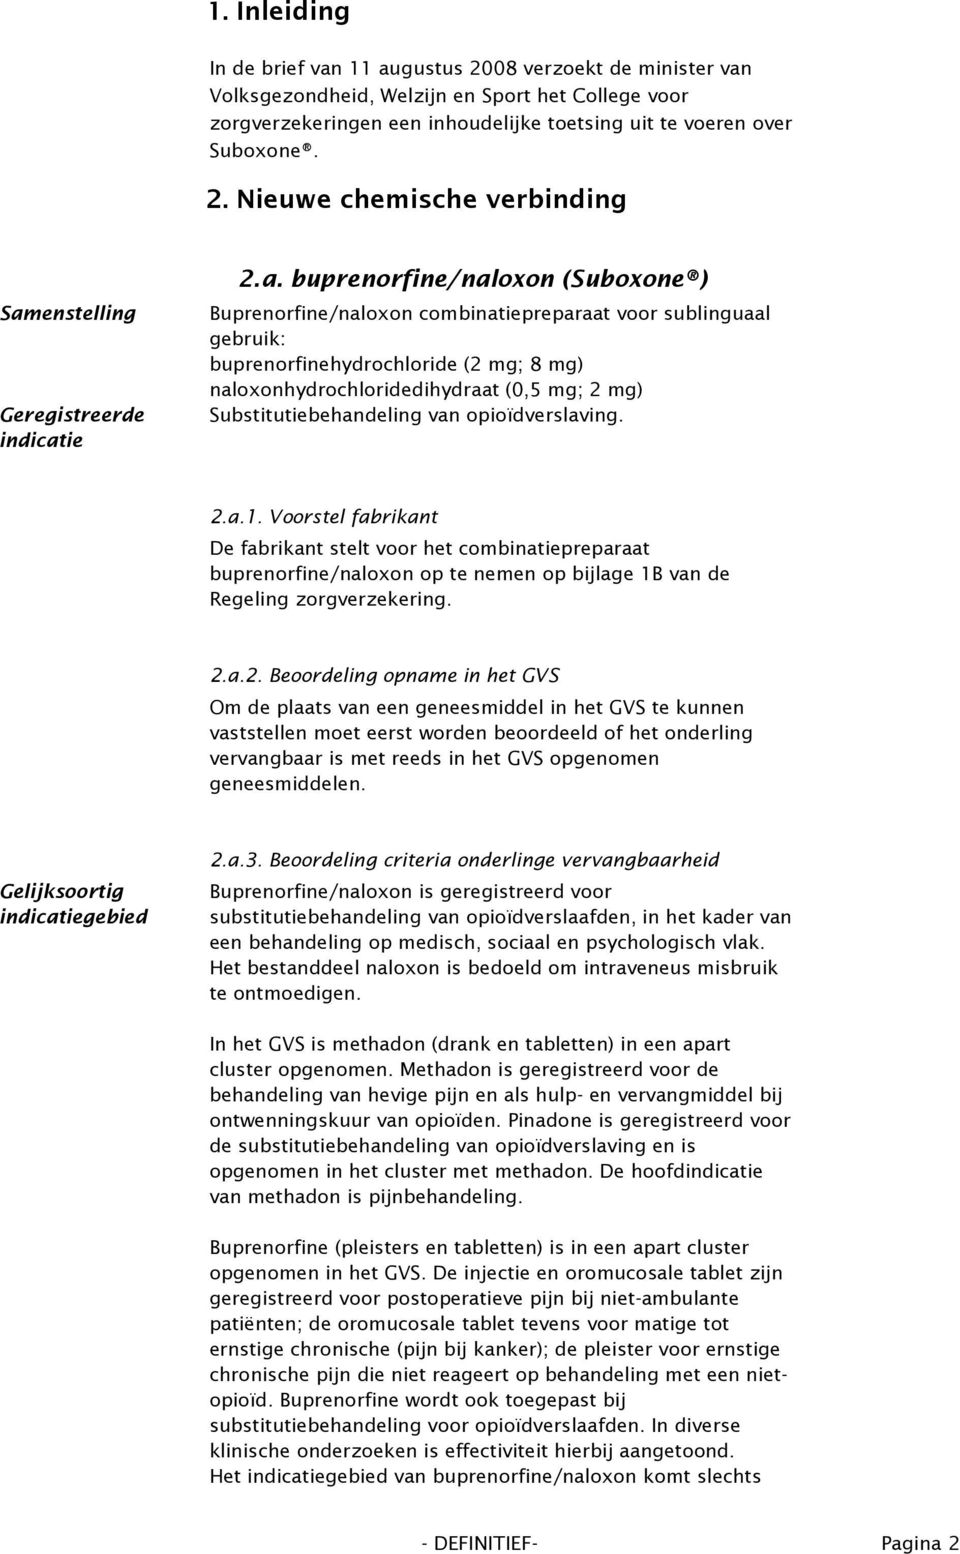 Substitutiebehandeling van opioïdverslaving. 2.a.1. Voorstel fabrikant De fabrikant stelt voor het combinatiepreparaat buprenorfine/naloxon op te nemen op bijlage 1B van de Regeling zorgverzekering.